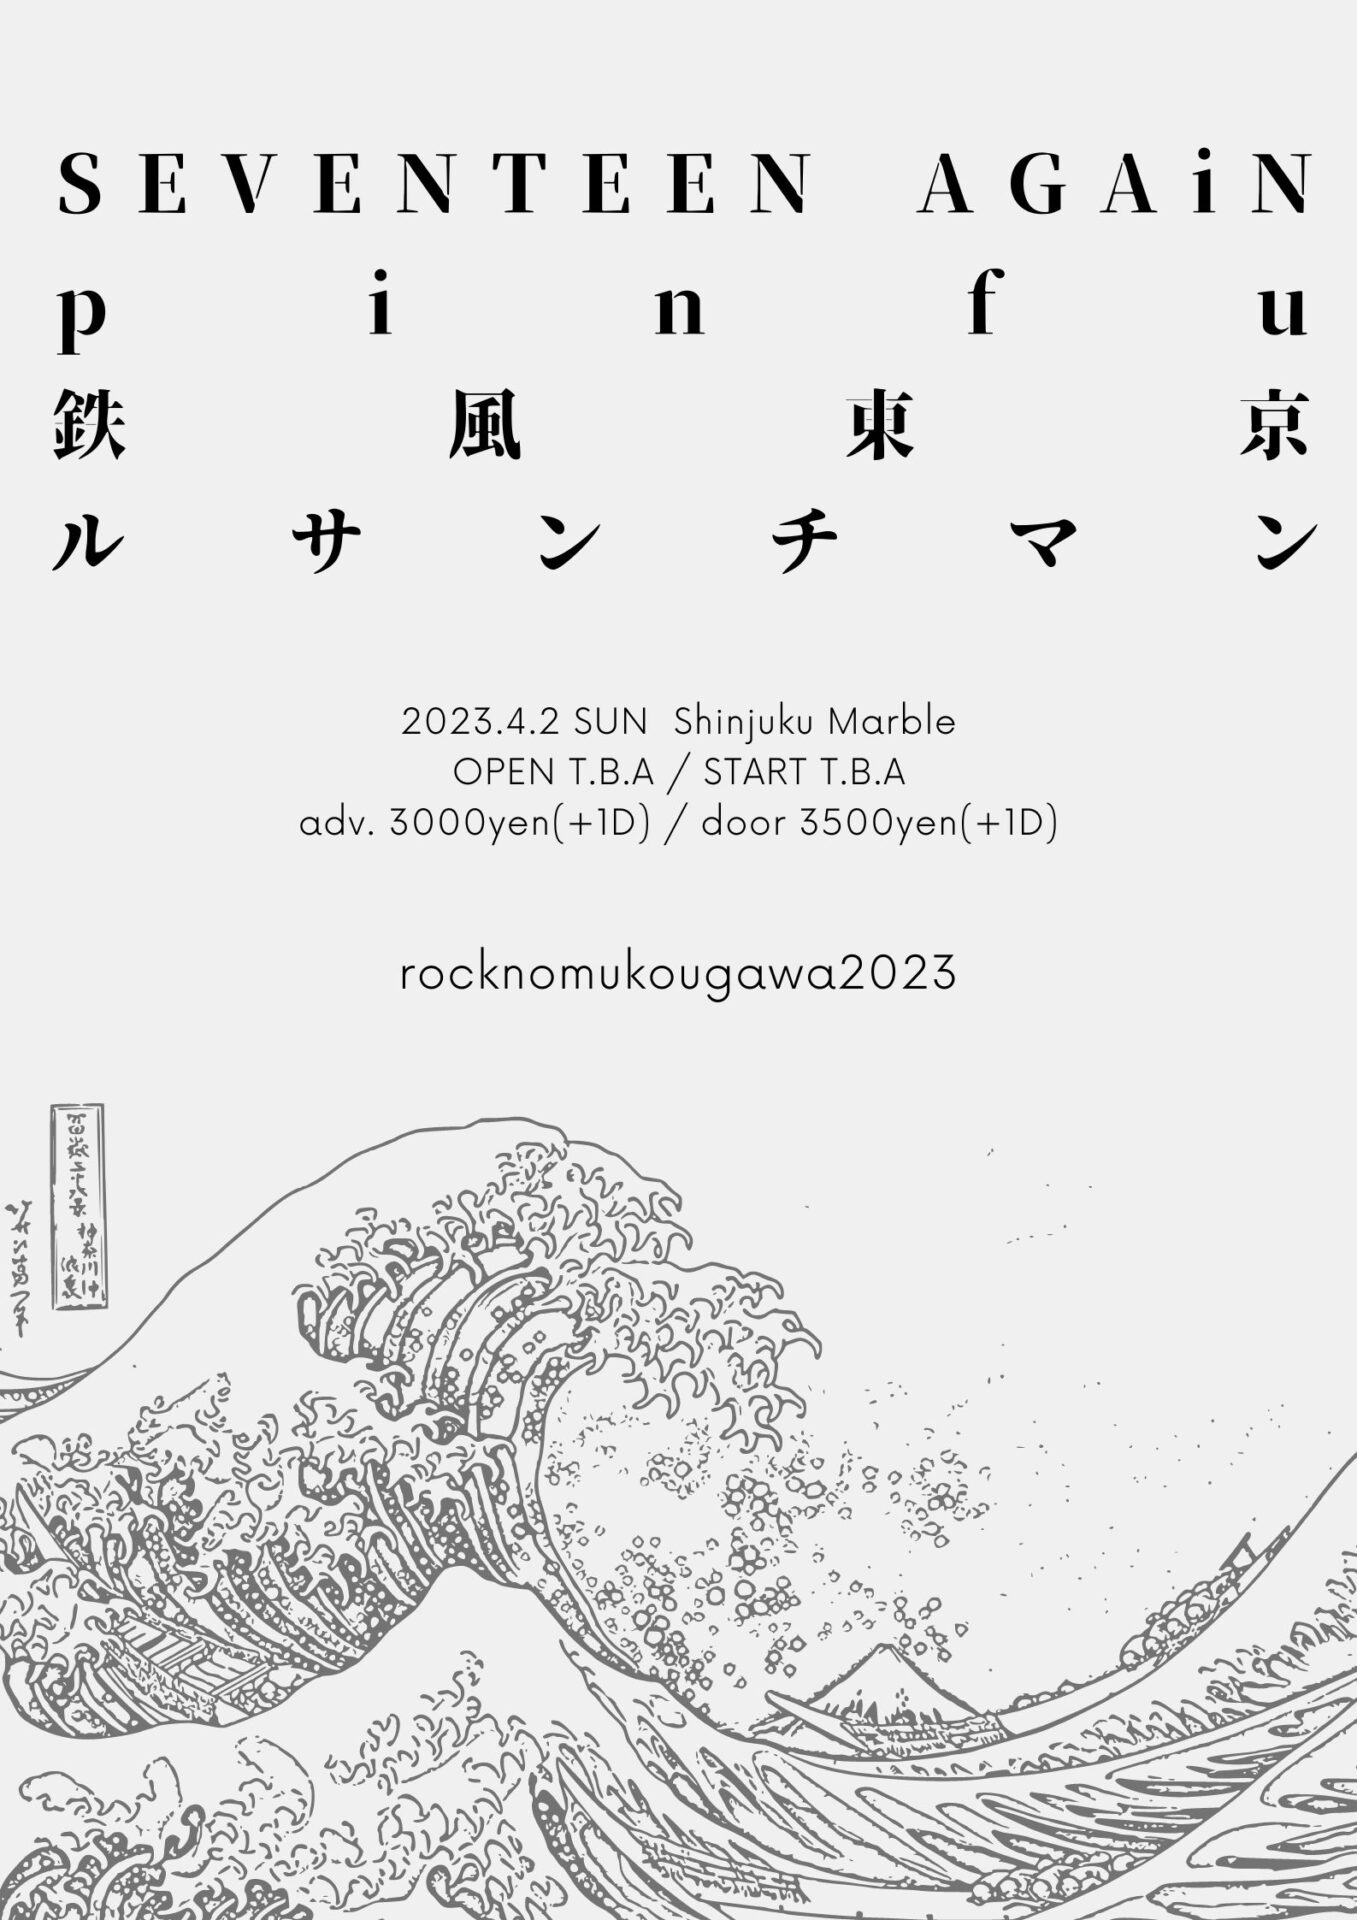 rocknomukougawa2023